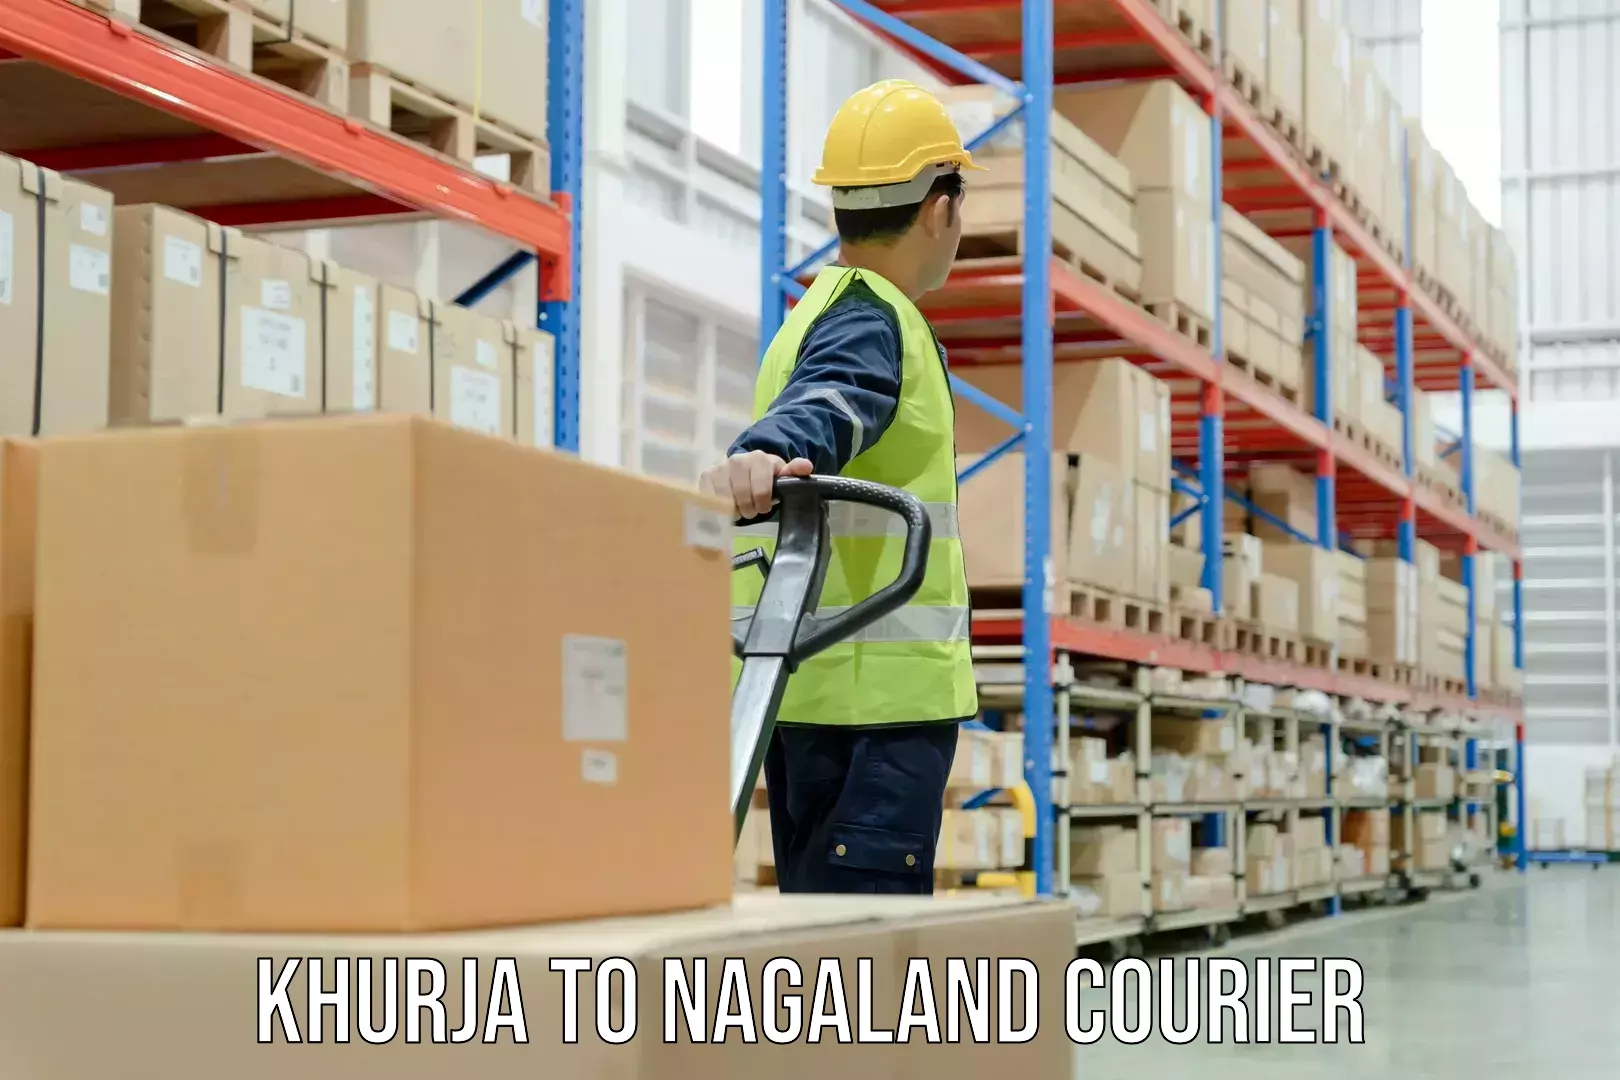 Efficient parcel service Khurja to Longleng